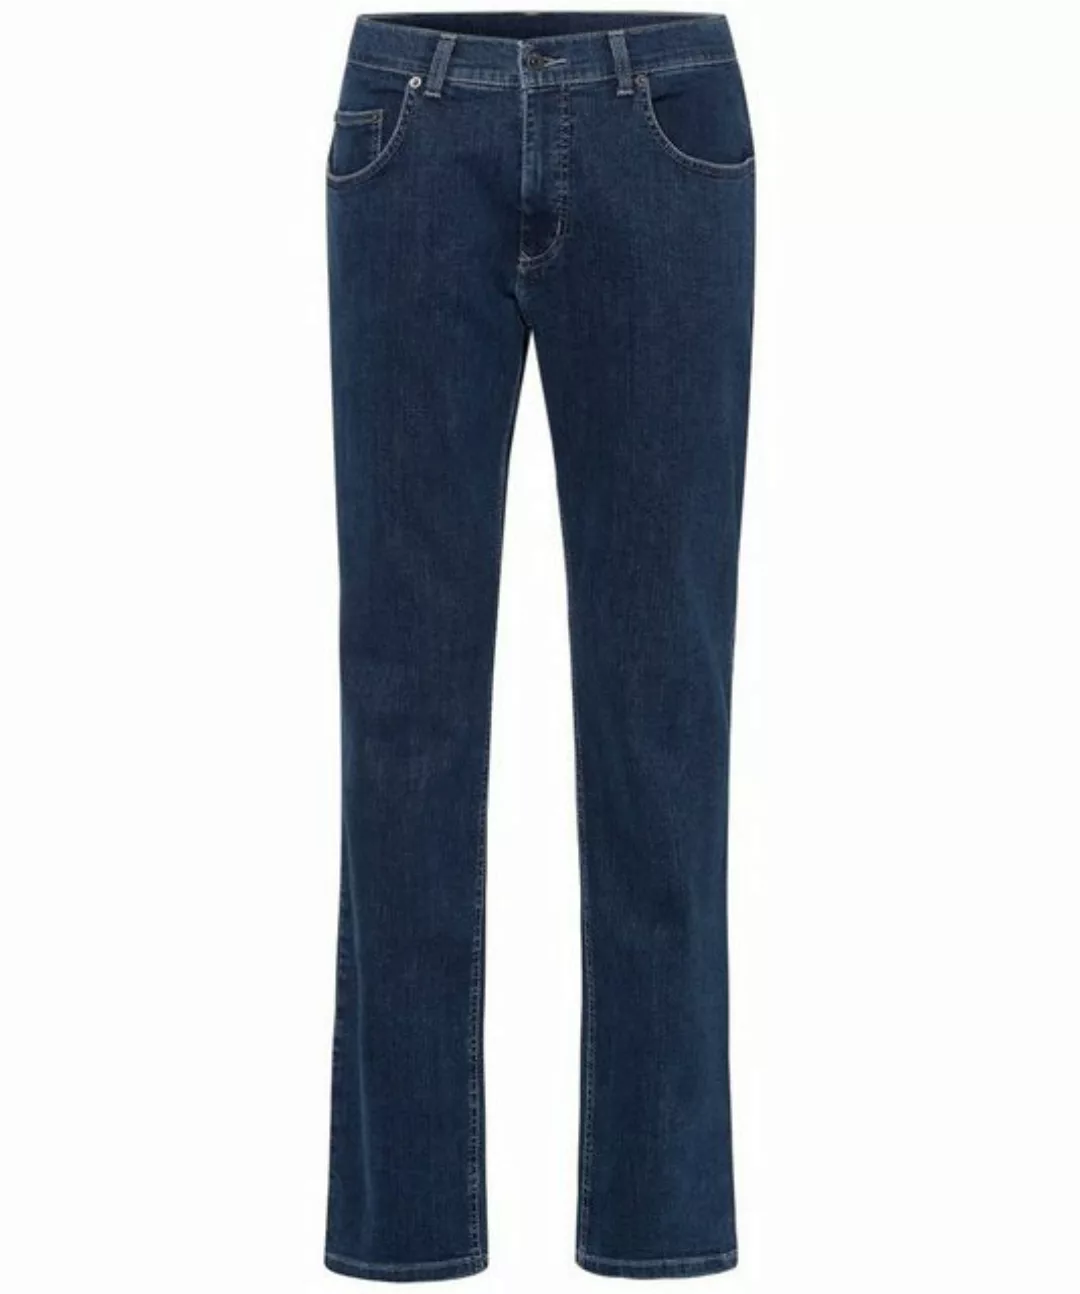 Pioneer Authentic Jeans 5-Pocket-Jeans PIONEER RON blue stonewash 11841 621 günstig online kaufen